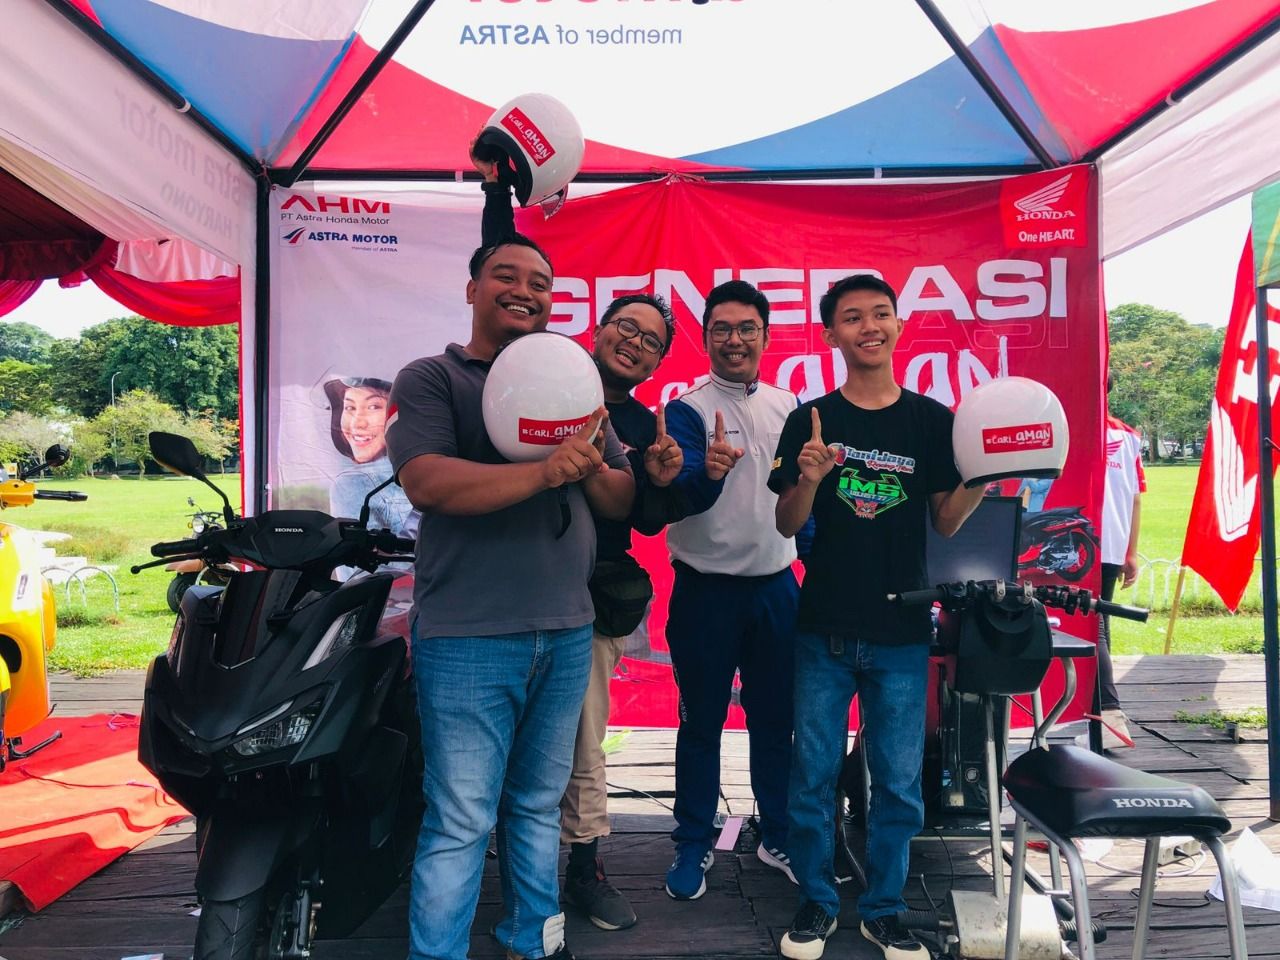 Astra Motor Kaltim 1-Polresta Balikpapan Kolab #cari_aman support police di Lapangan Merdeka Balikpapan.